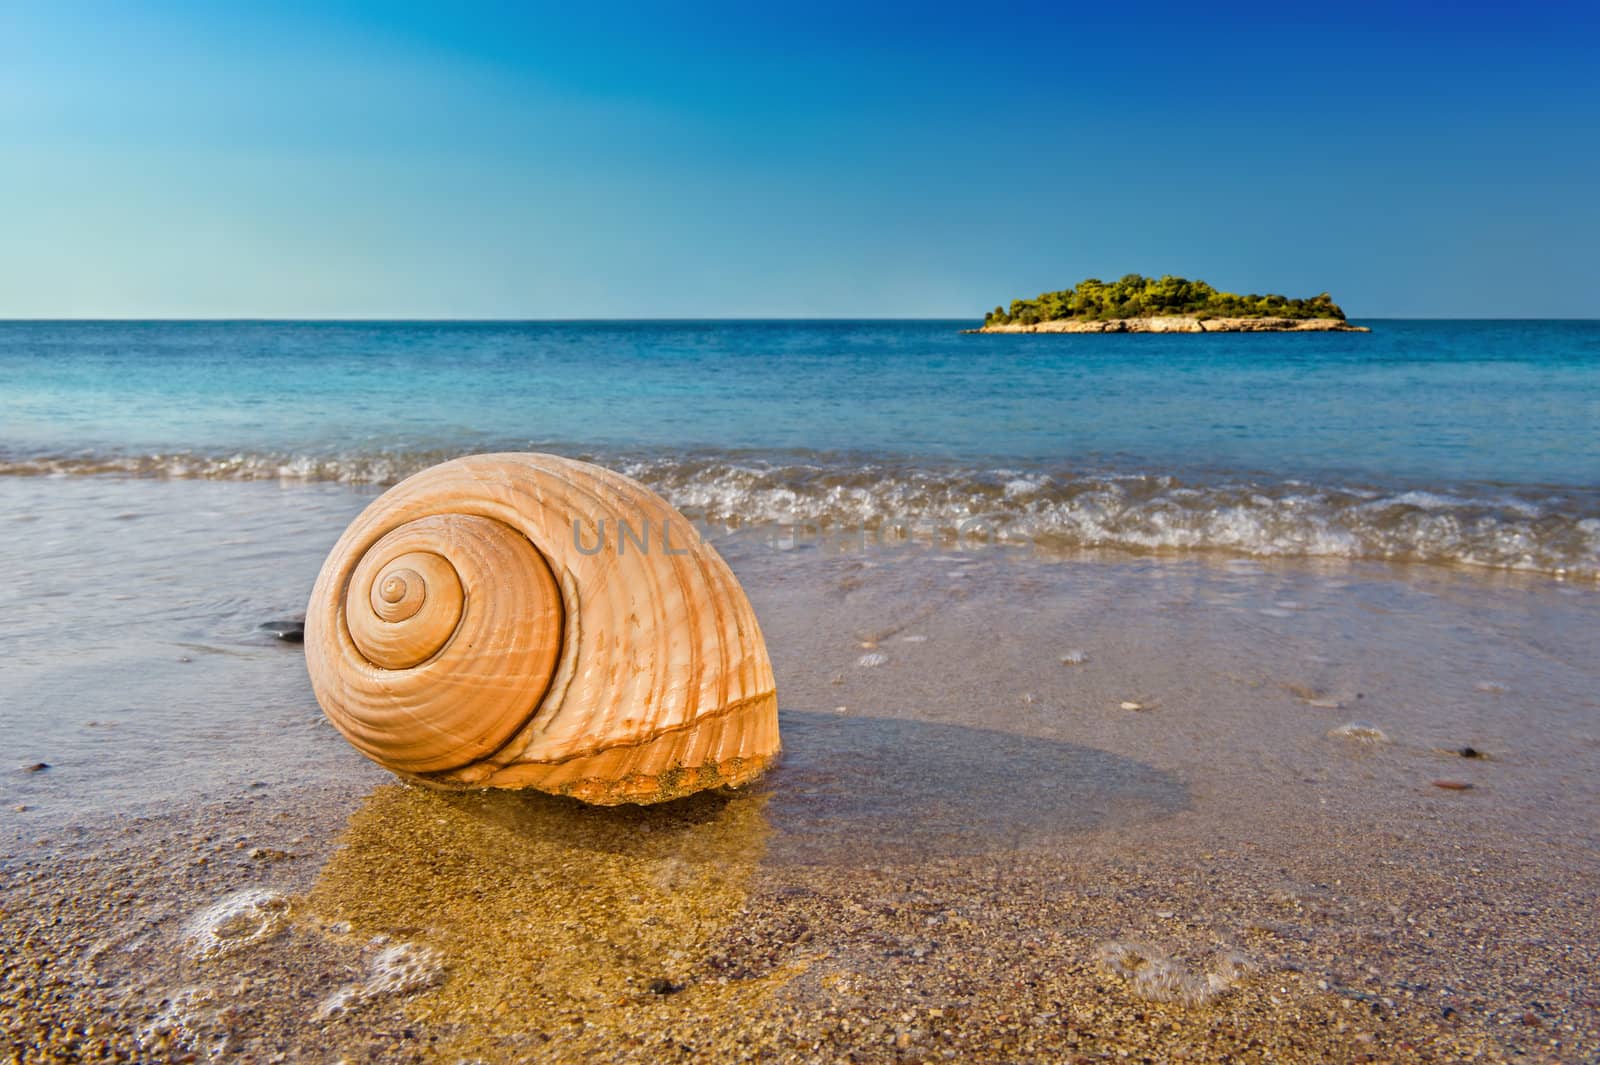 Seashell on calm Mediterranean beach by akarelias